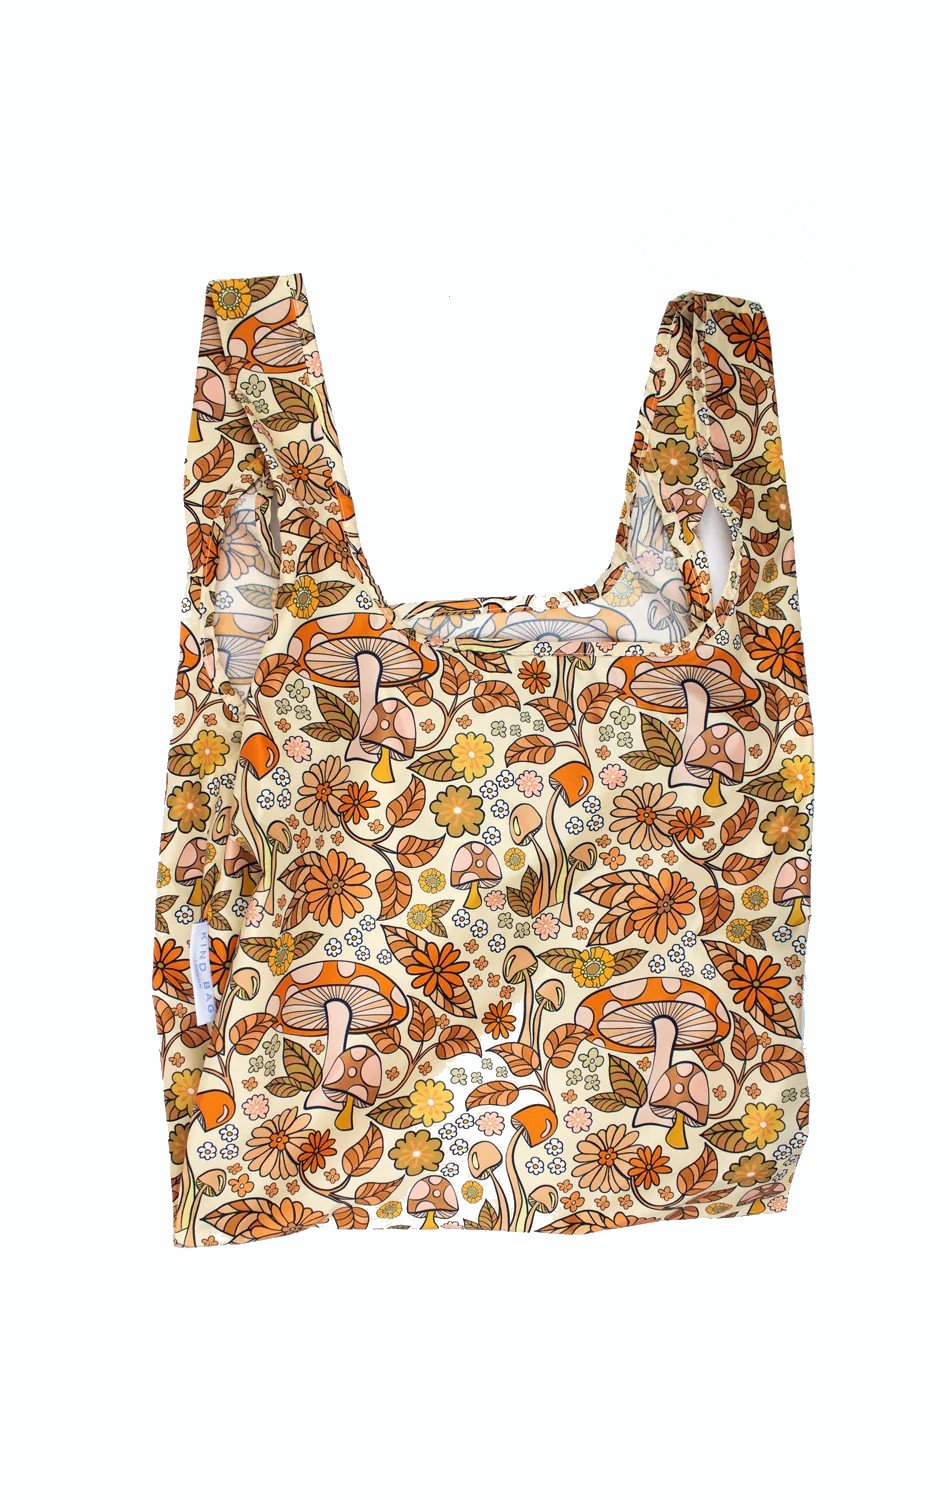 Reusable Shopping Bag Med / Mushroom Beige